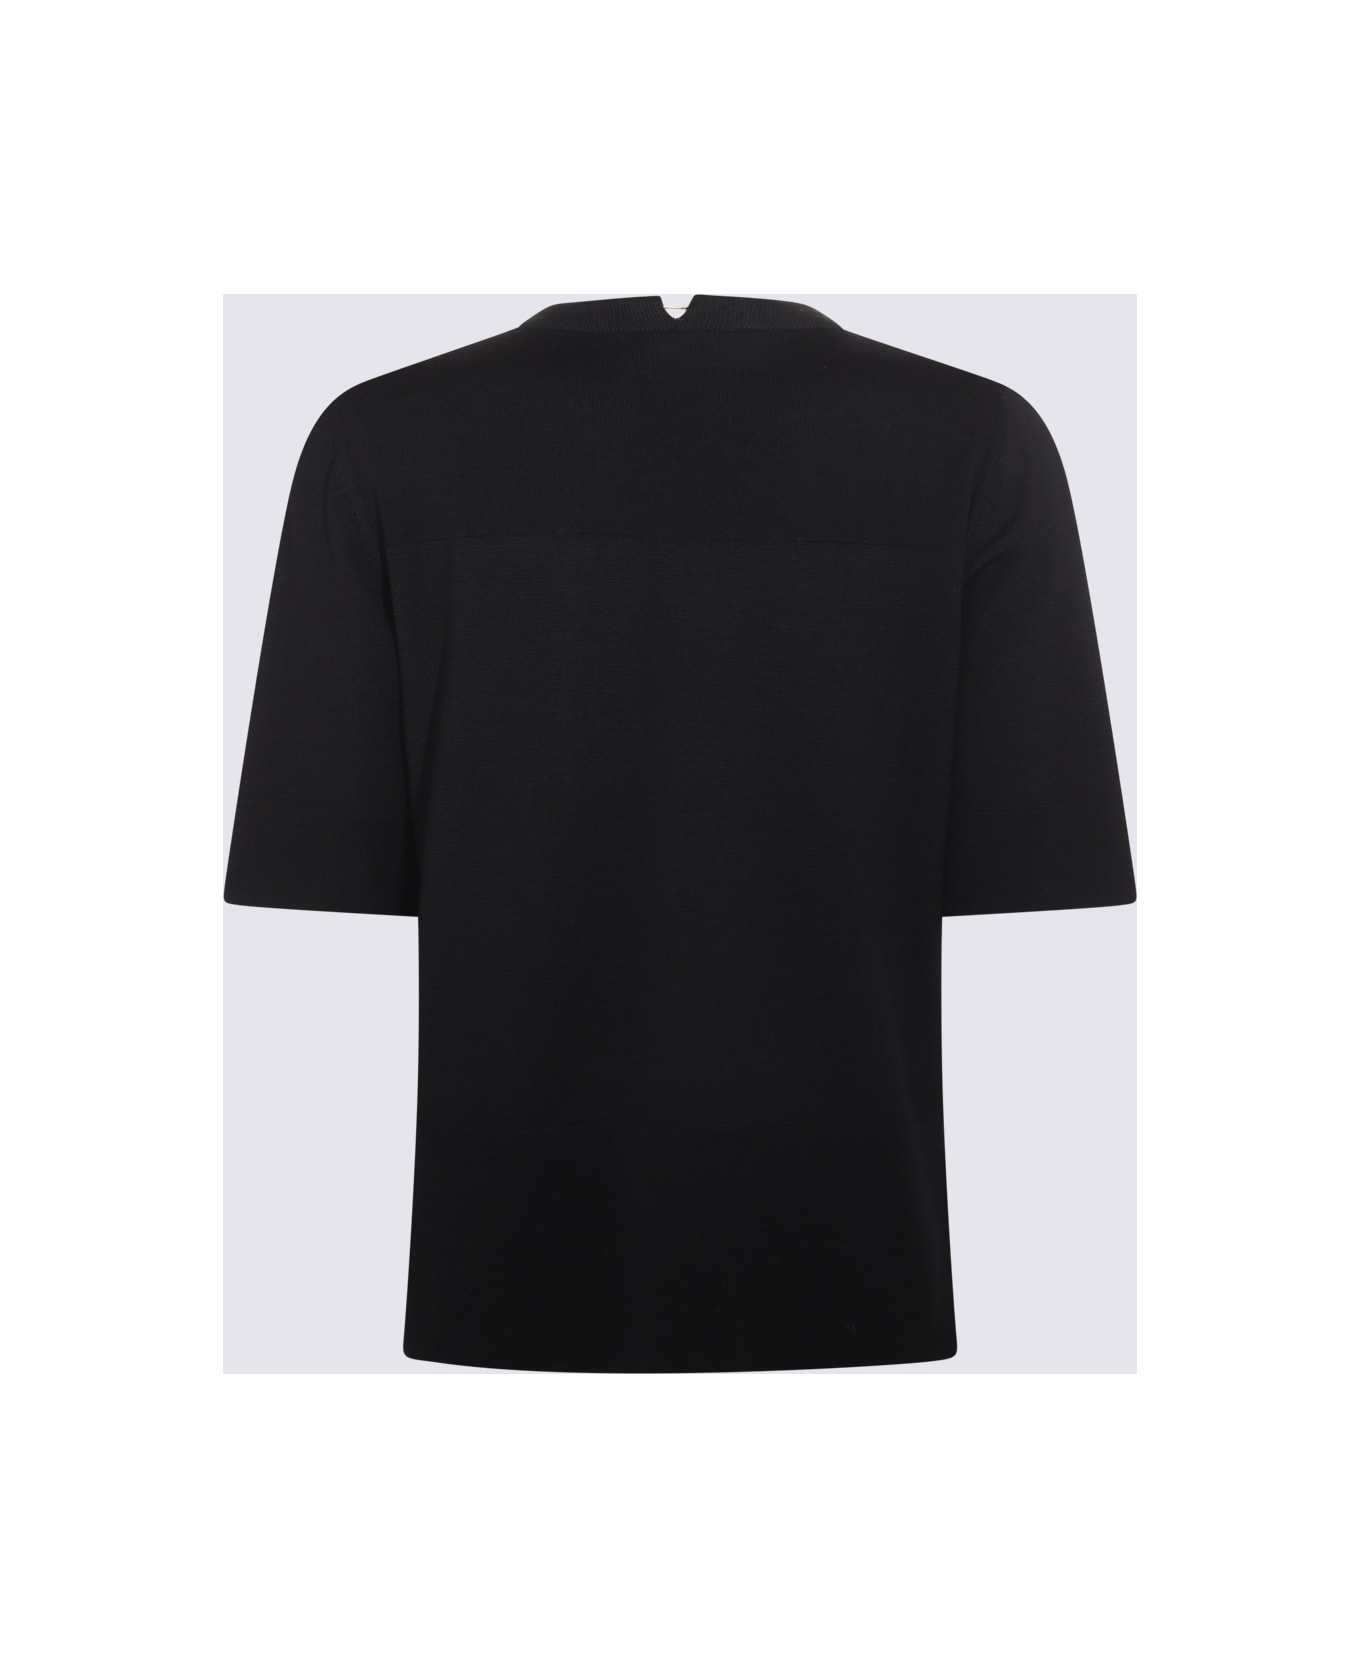 Jil Sander Black Cotton Polo Sweater - Black